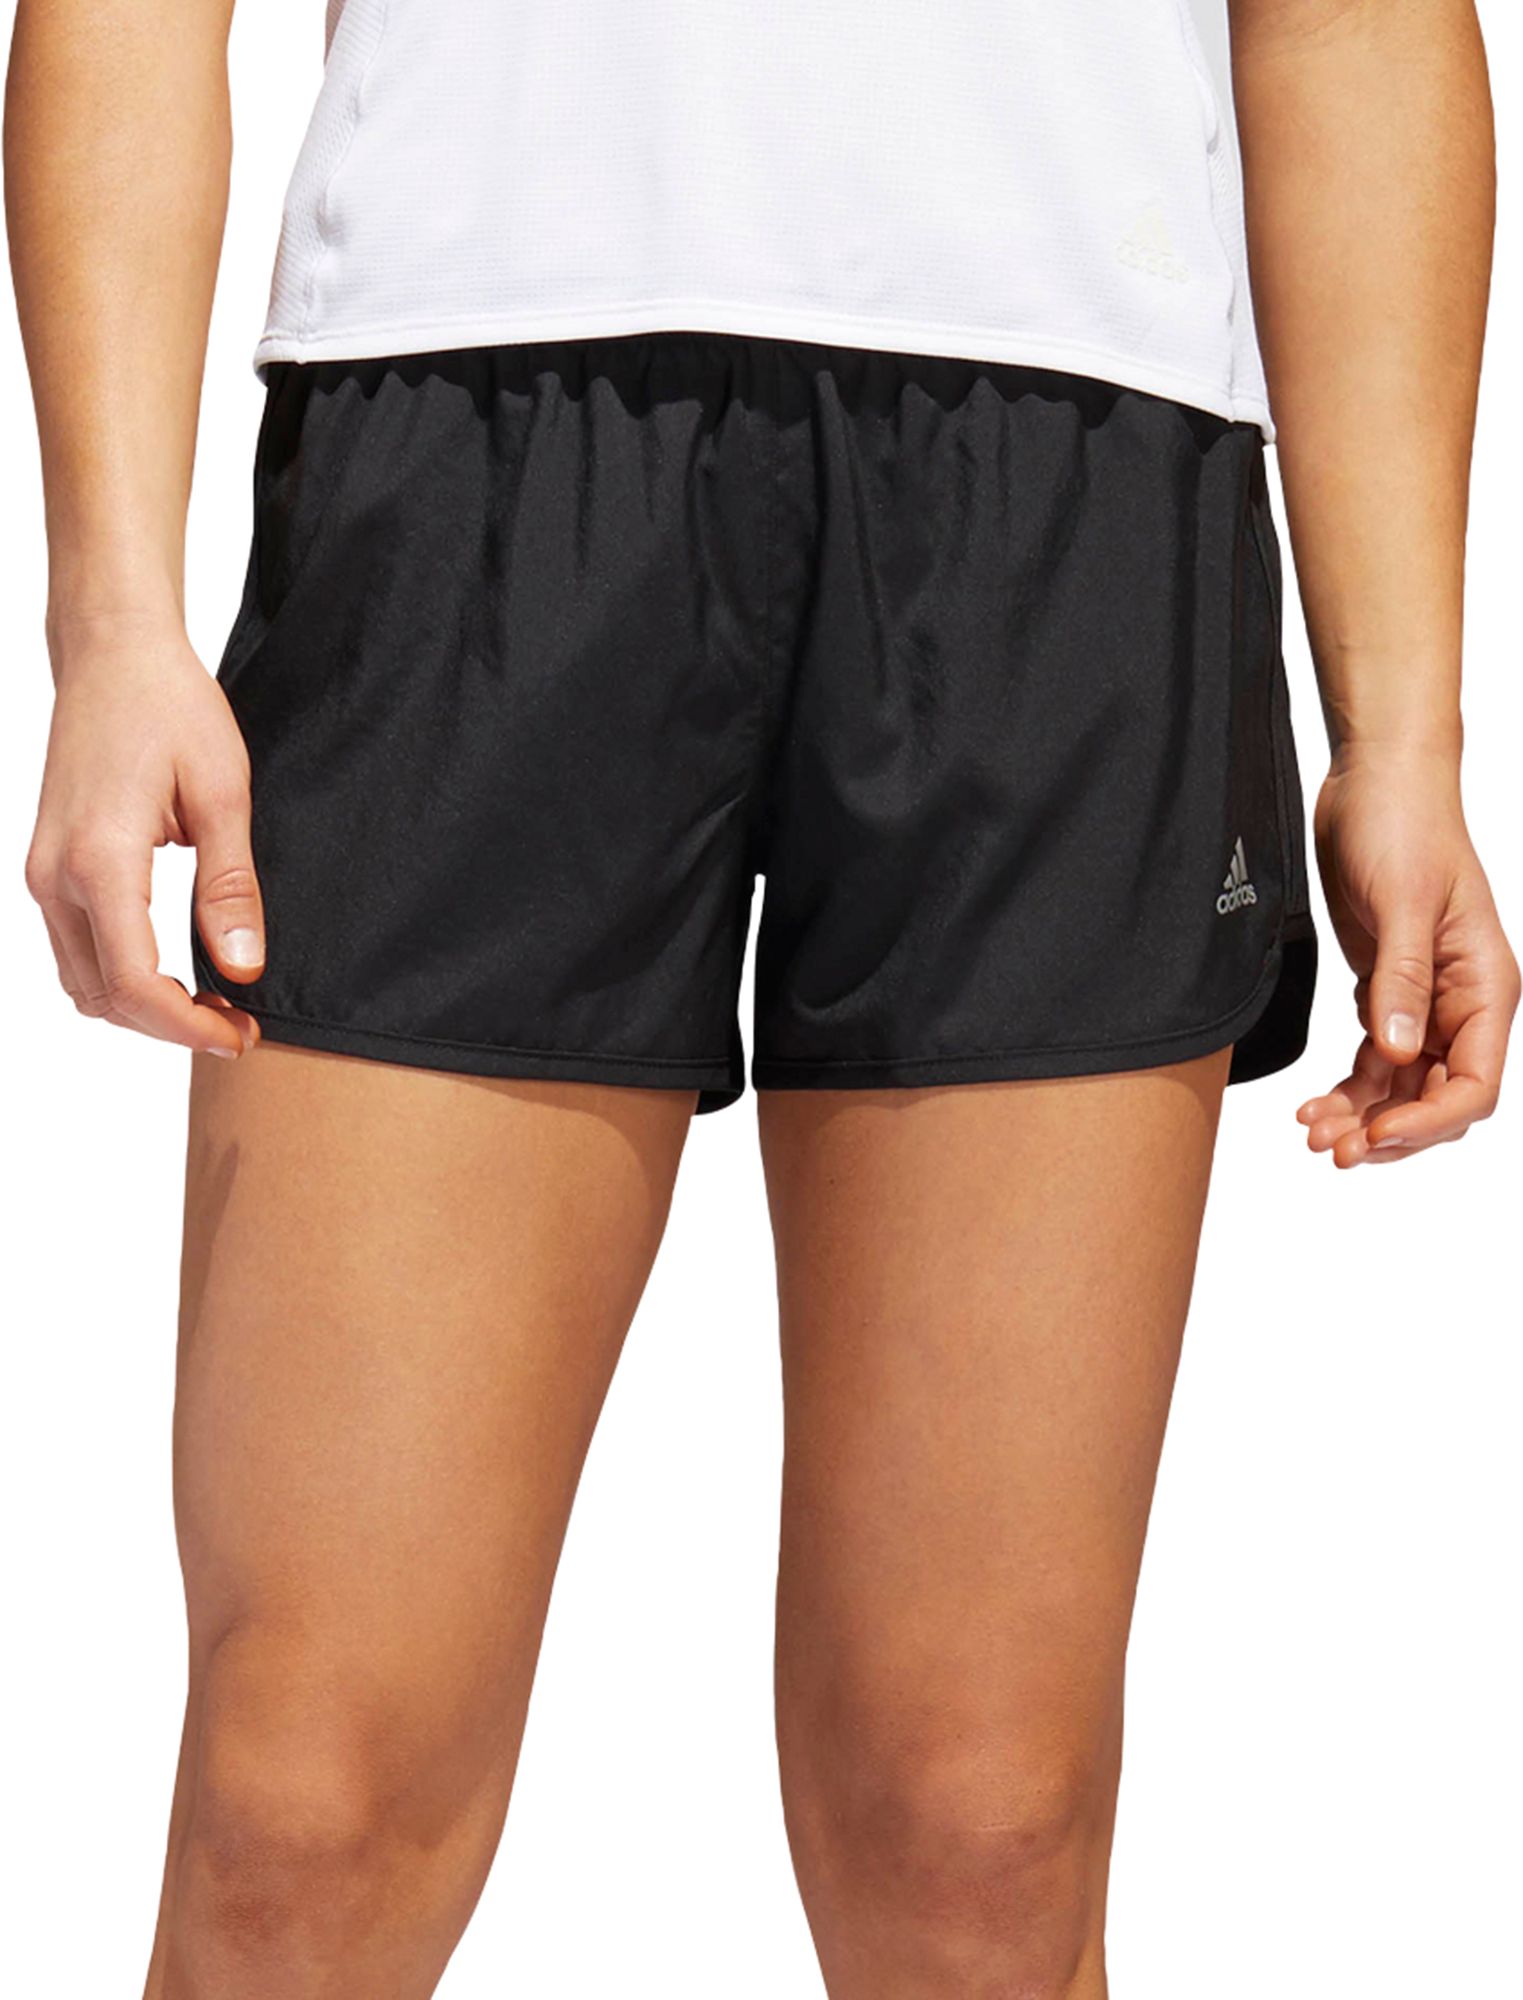 adidas m20 running shorts